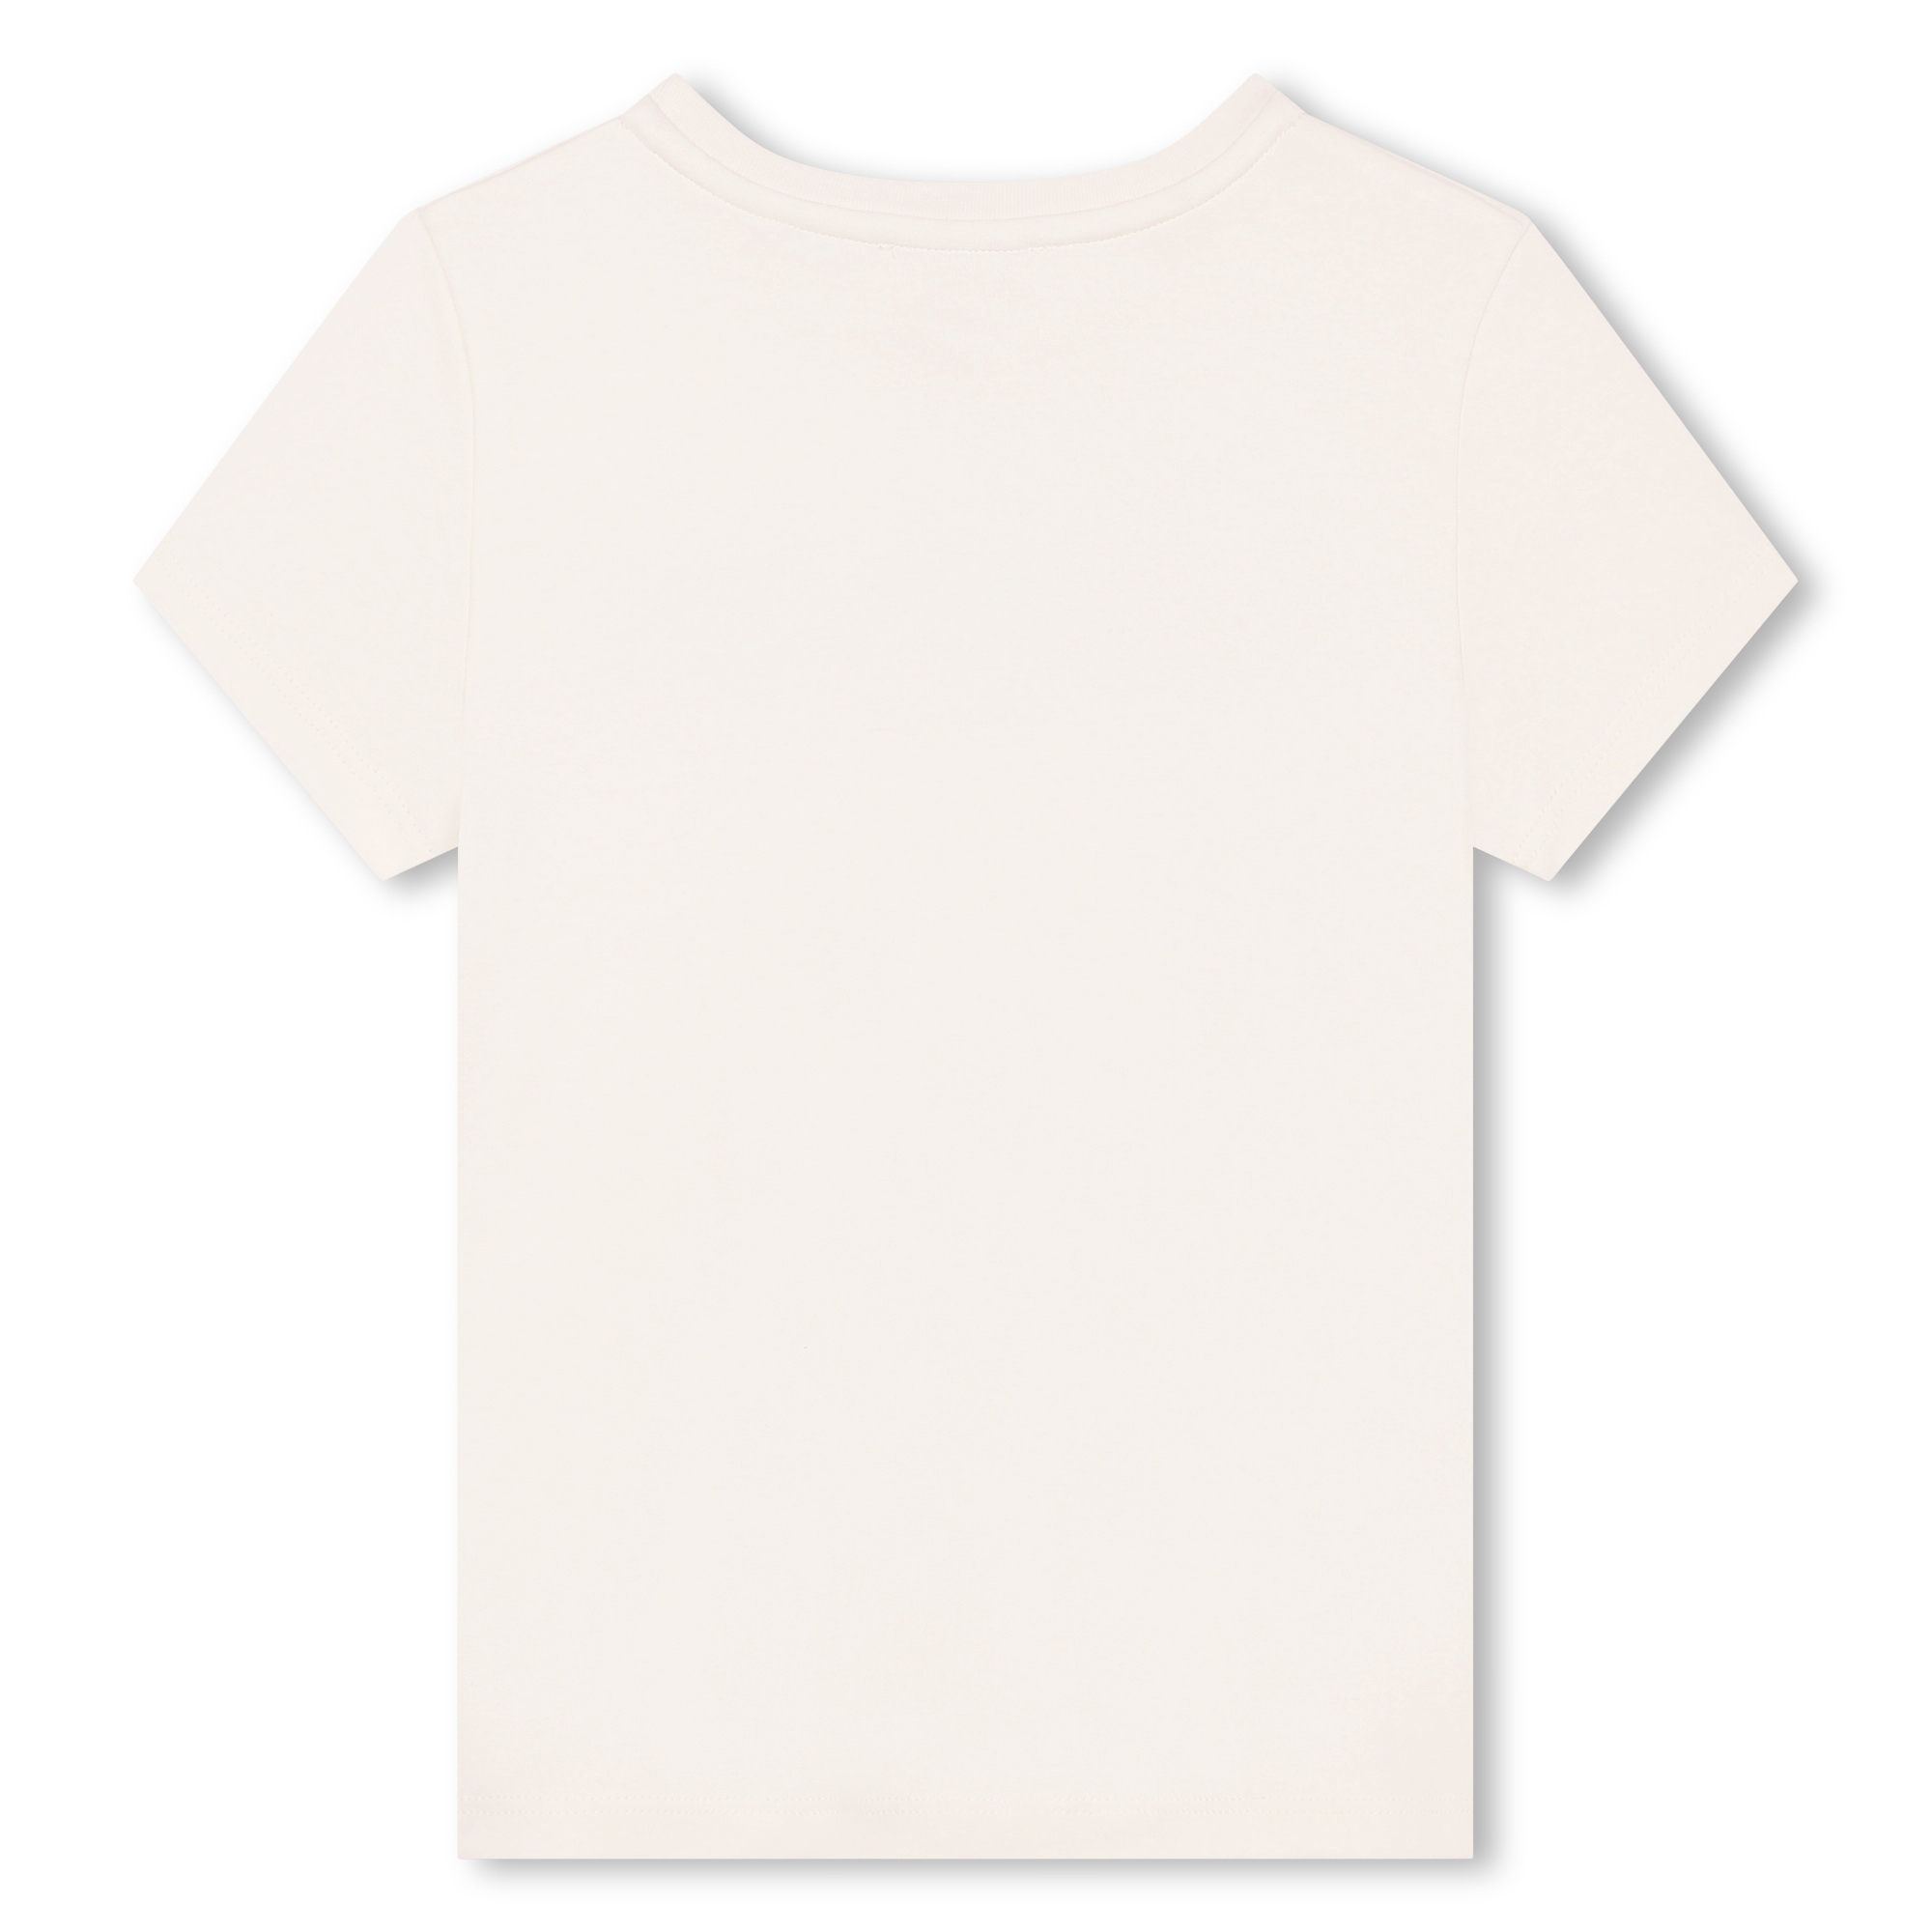 T-shirt met logo en korte mouwen LANVIN Voor